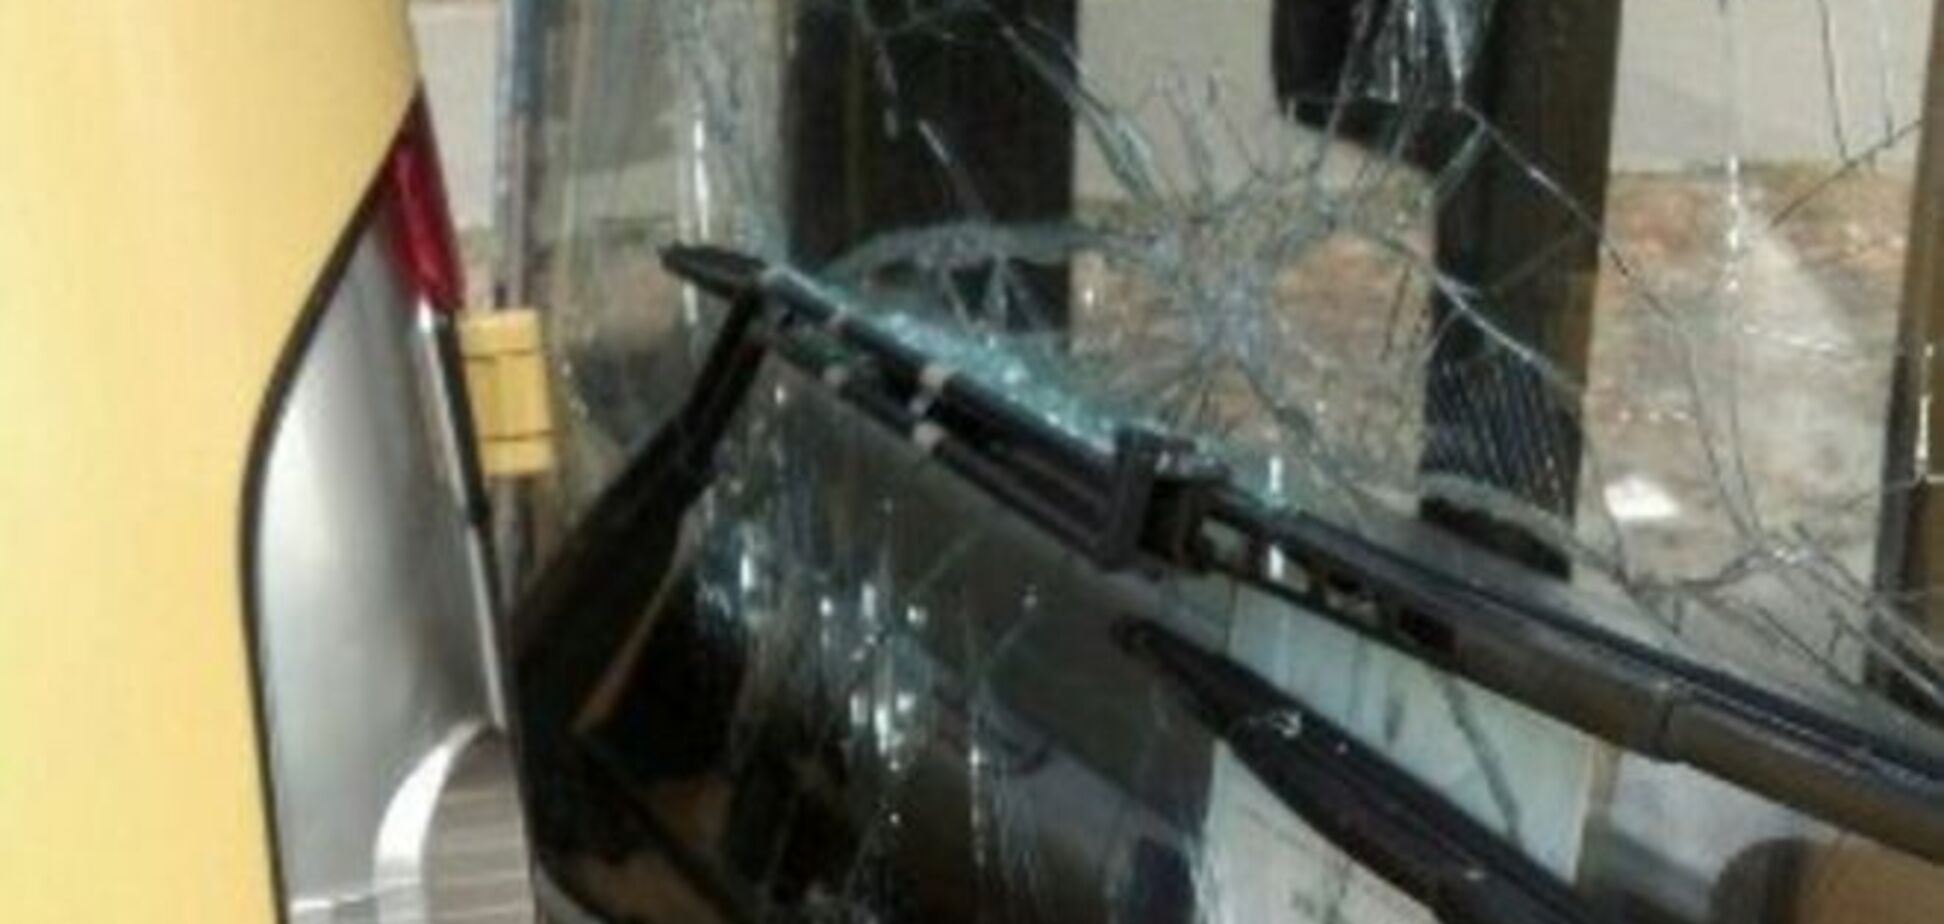 В Киеве автобус с пассажирами протаранил автомобиль: фотофакт